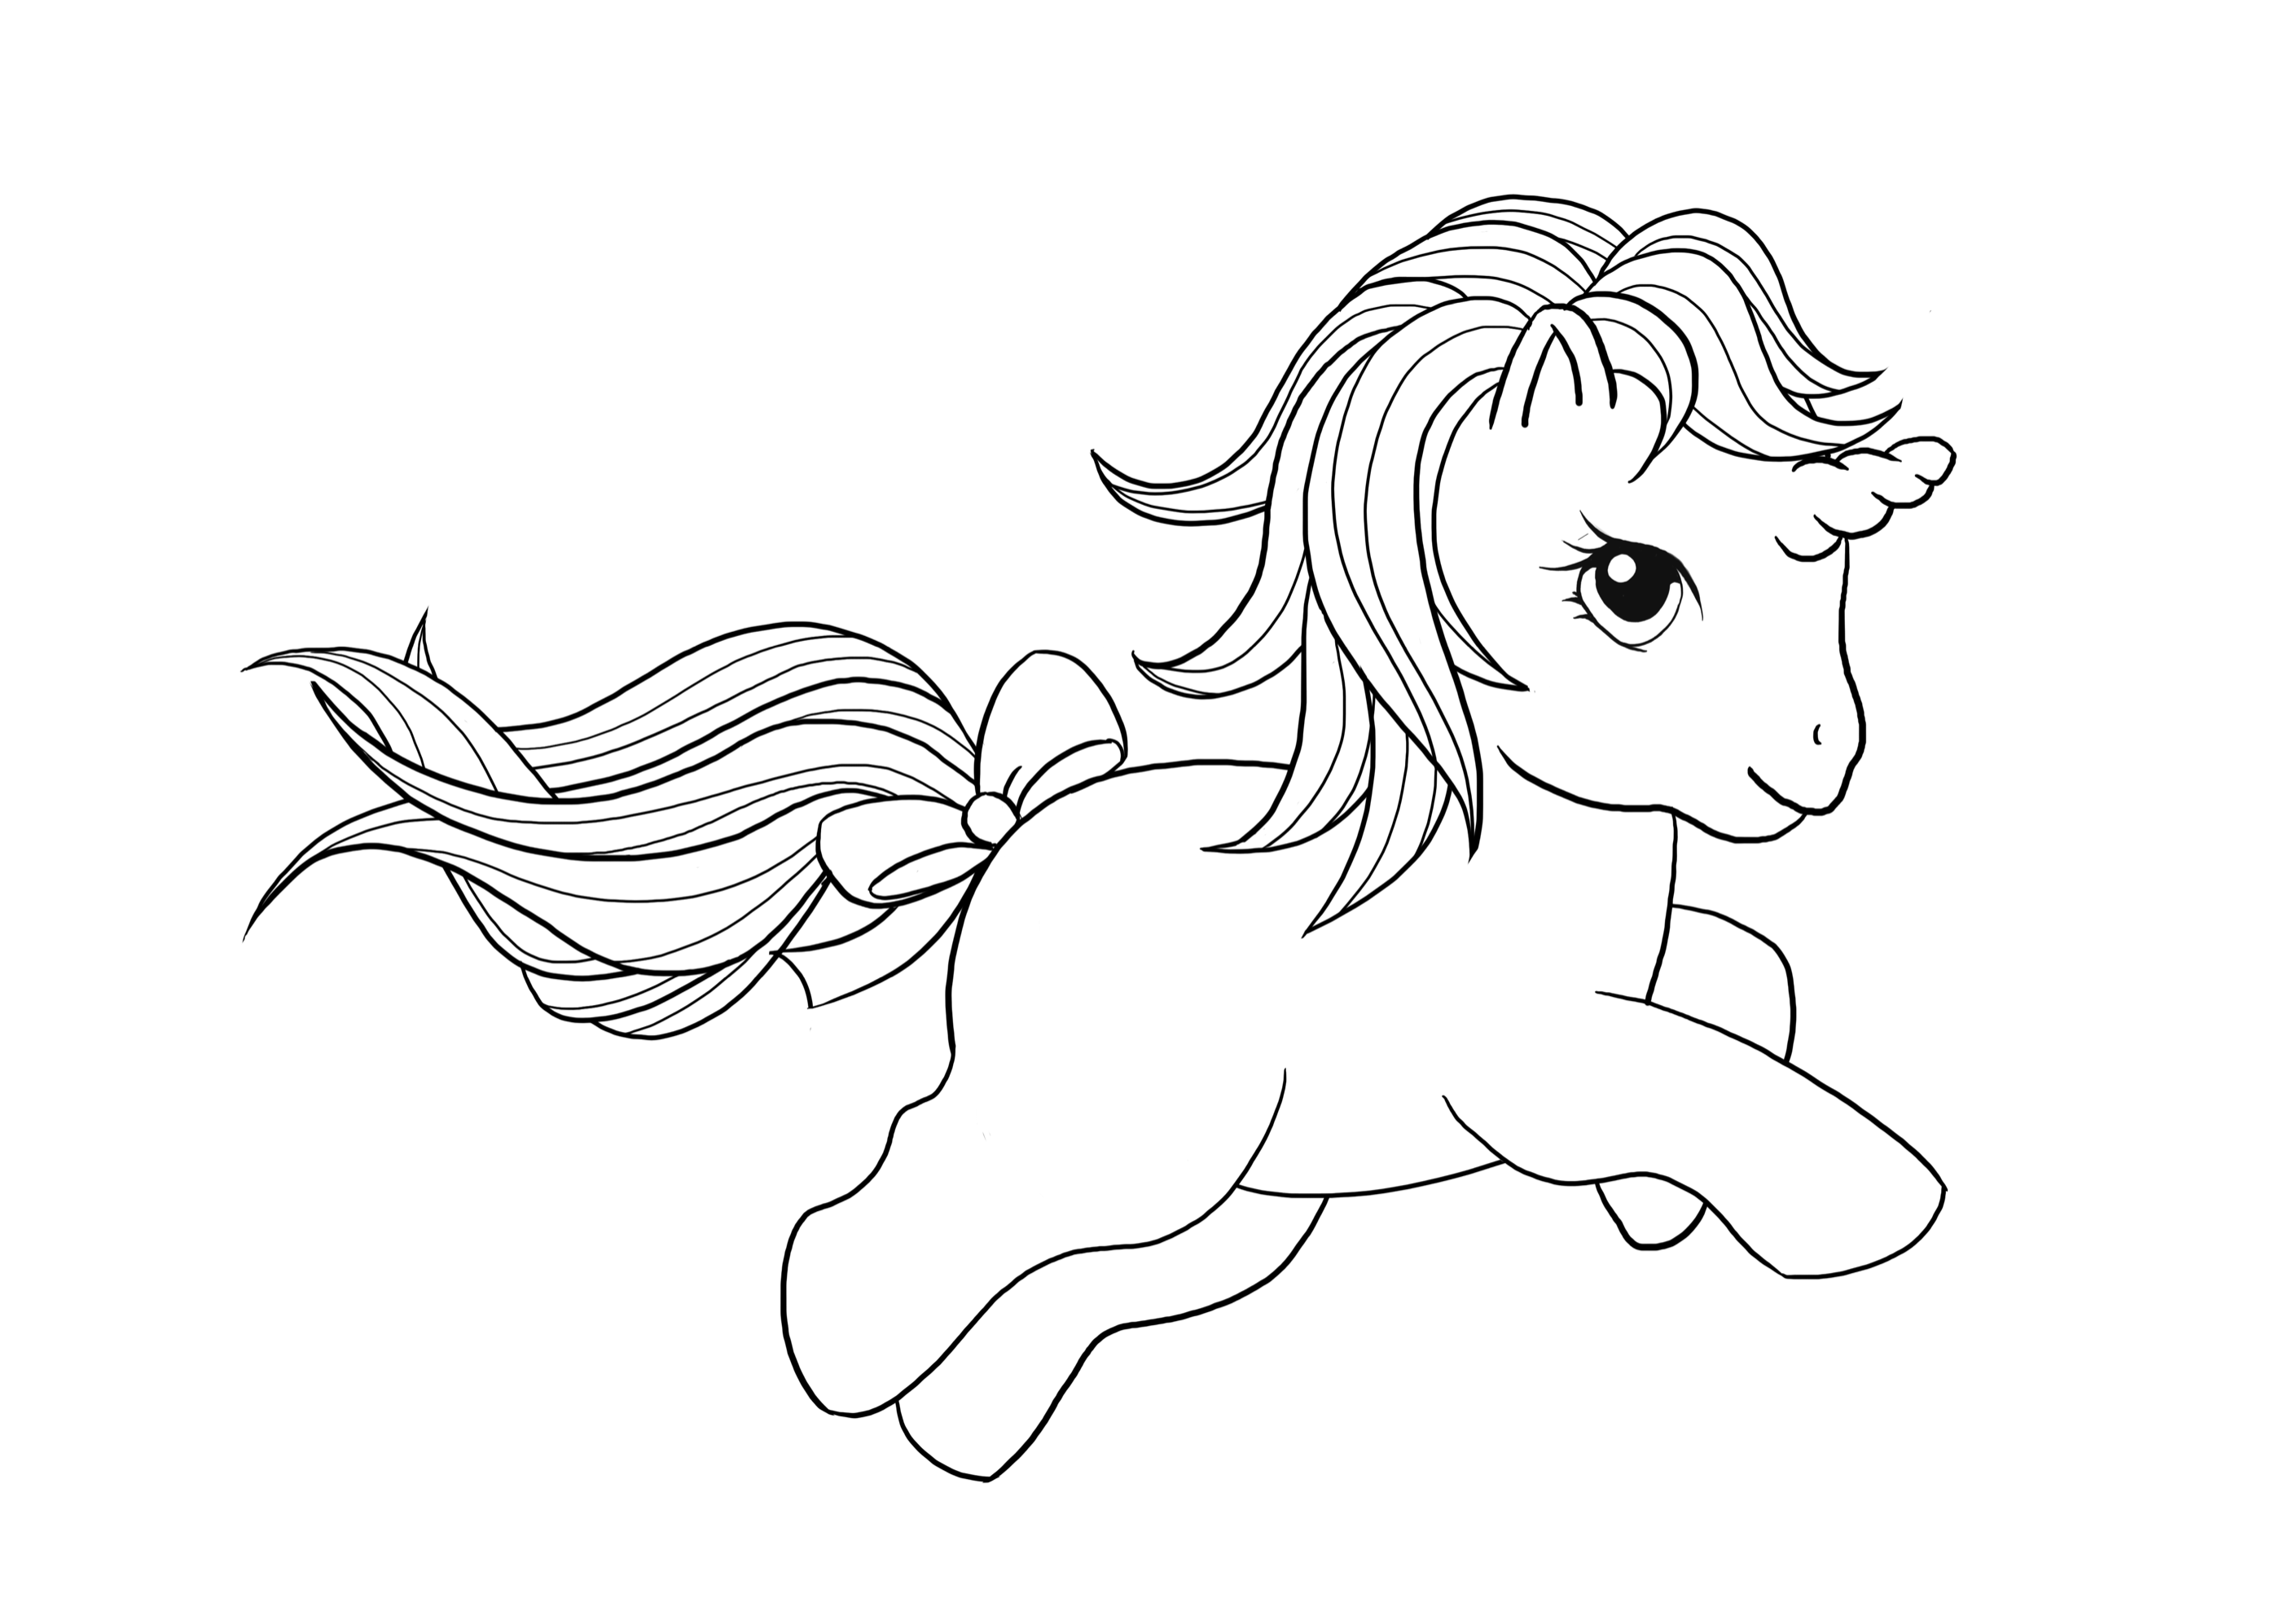 Kolorowanka My Little Pony kucyk z kokardką na ogonie i krótkimi włosami